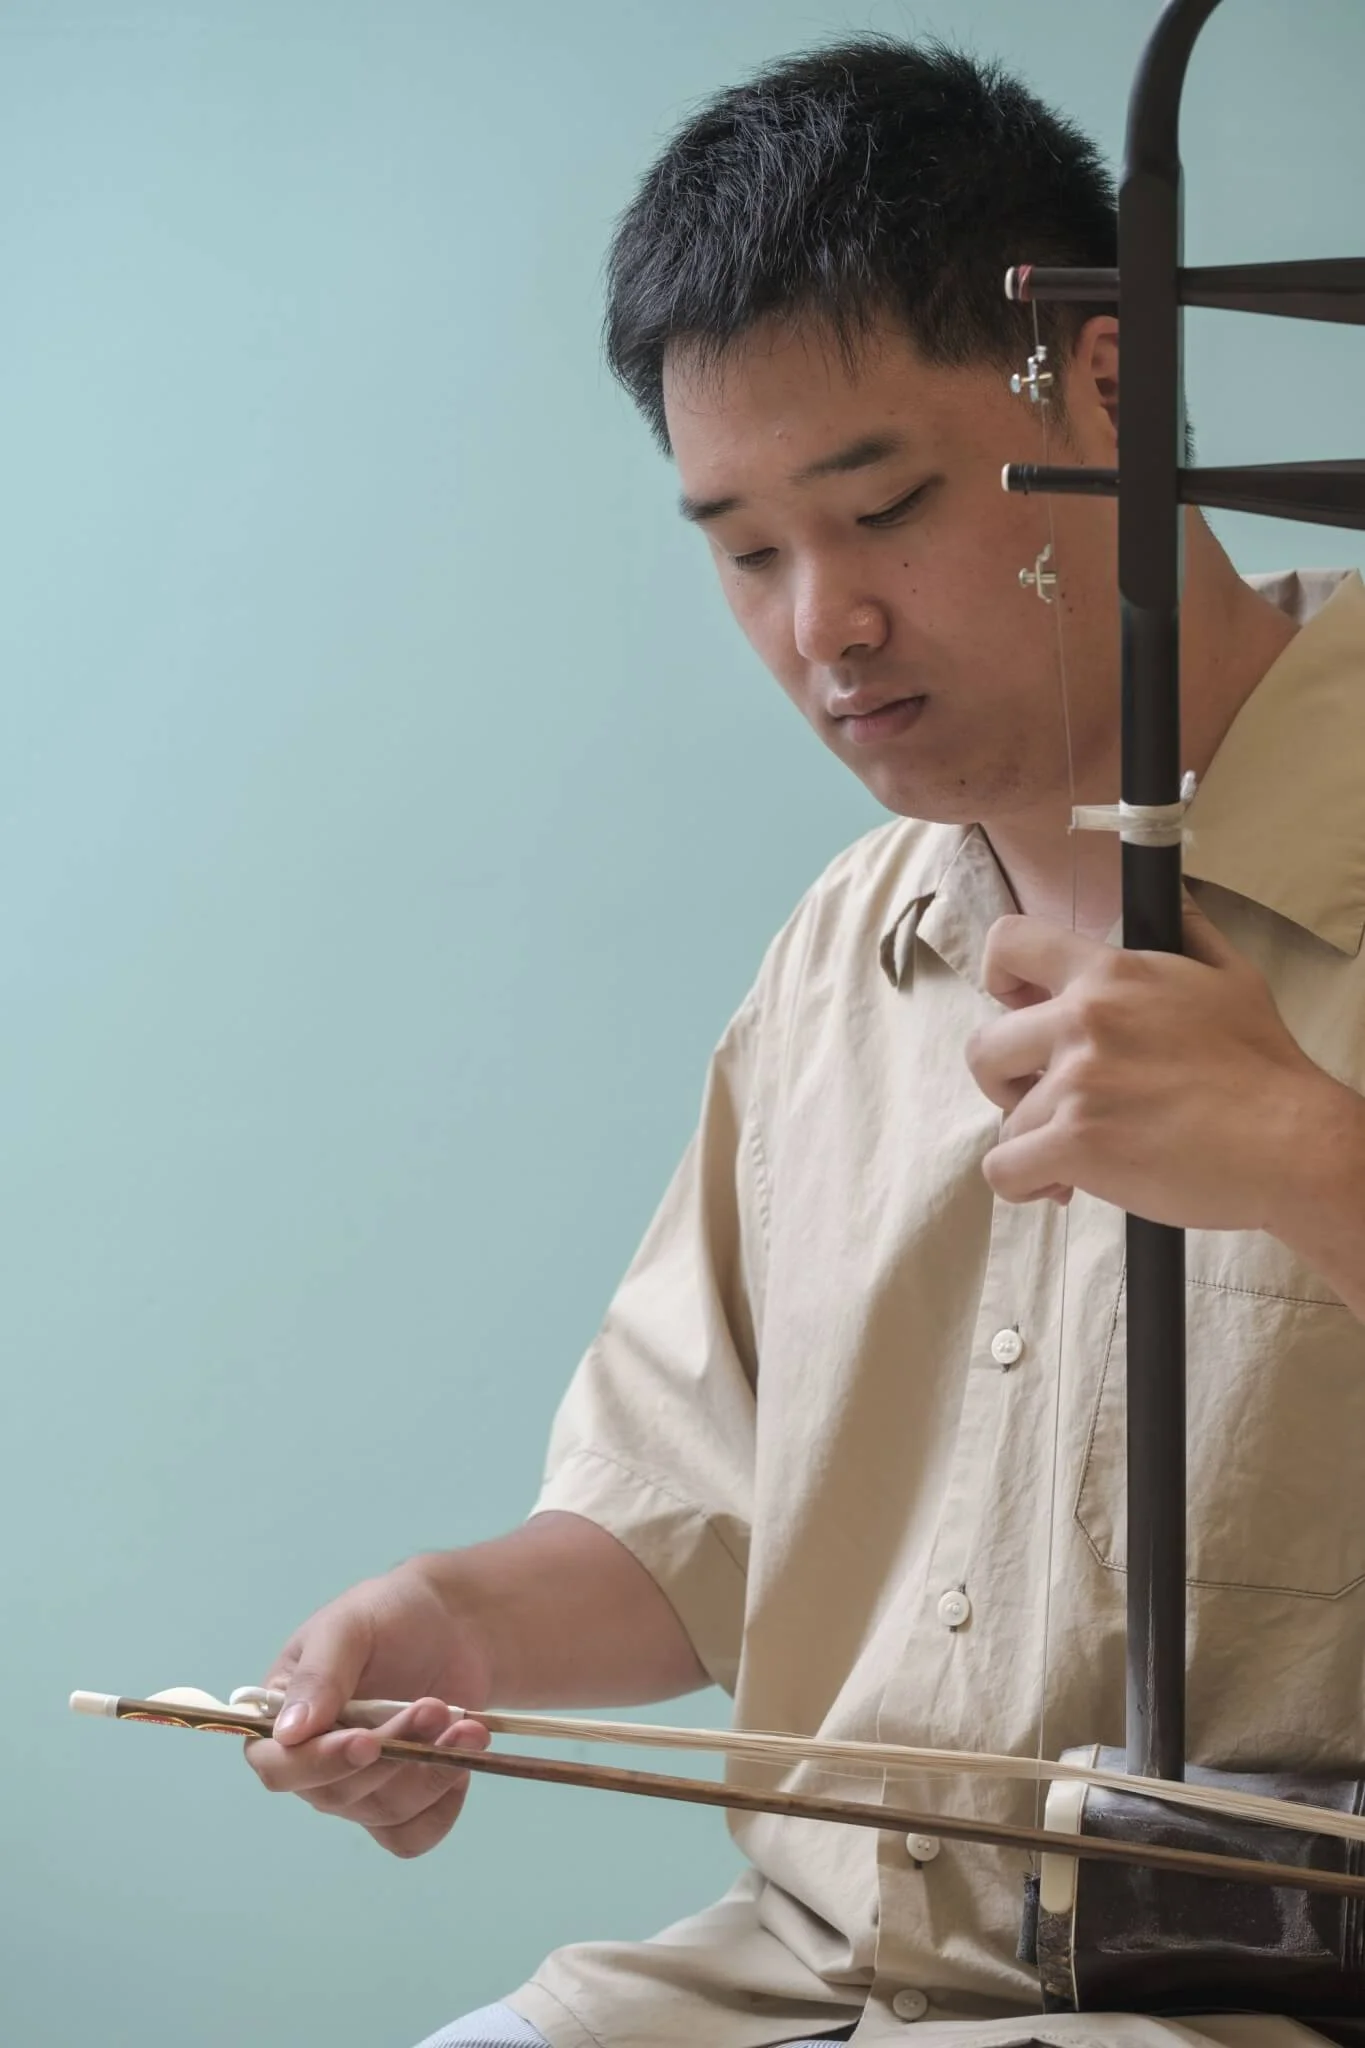 二胡的演奏動作講求平、直、穩，但楊恩華無法靠肉眼調整動作，只能以耳朵聽聲音變化來判斷。